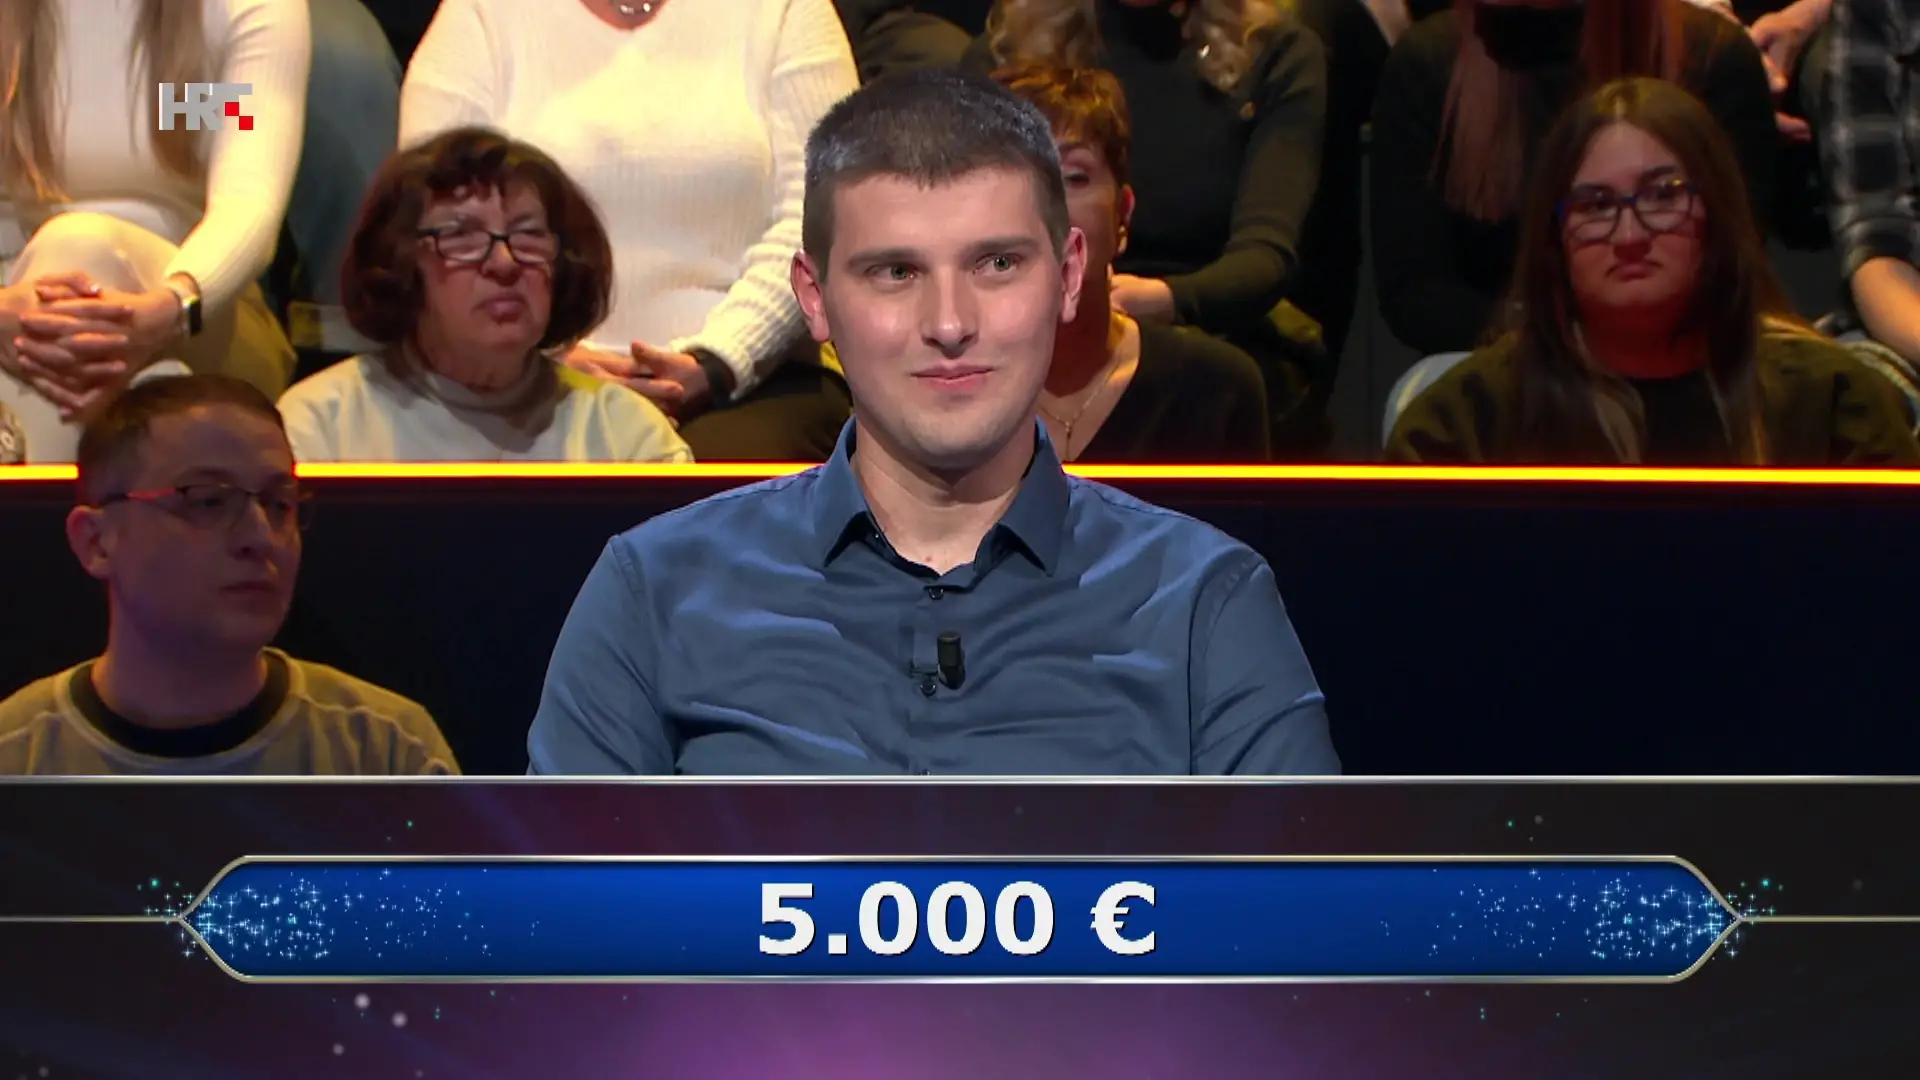 Alen u 'Milijunašu' tražio pomoć publike pa otišao doma s 5000 eura. Znate li vi točan odgovor?